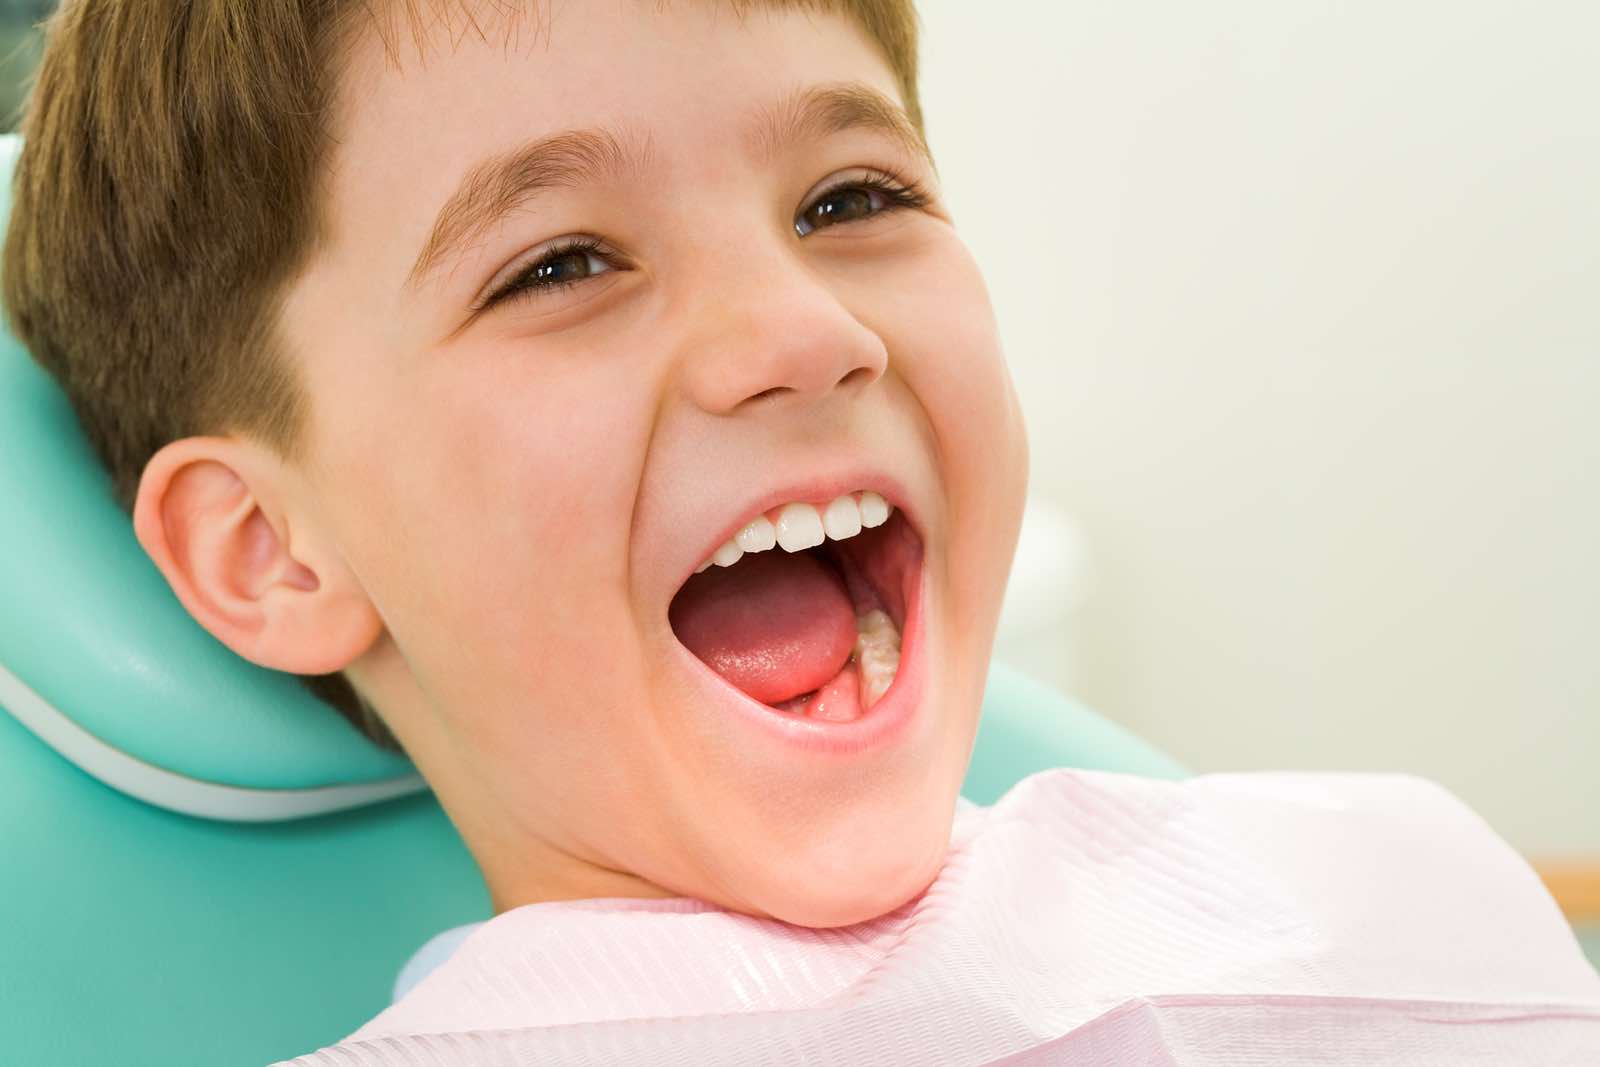 الاسنان اللبنية عند الاطفال